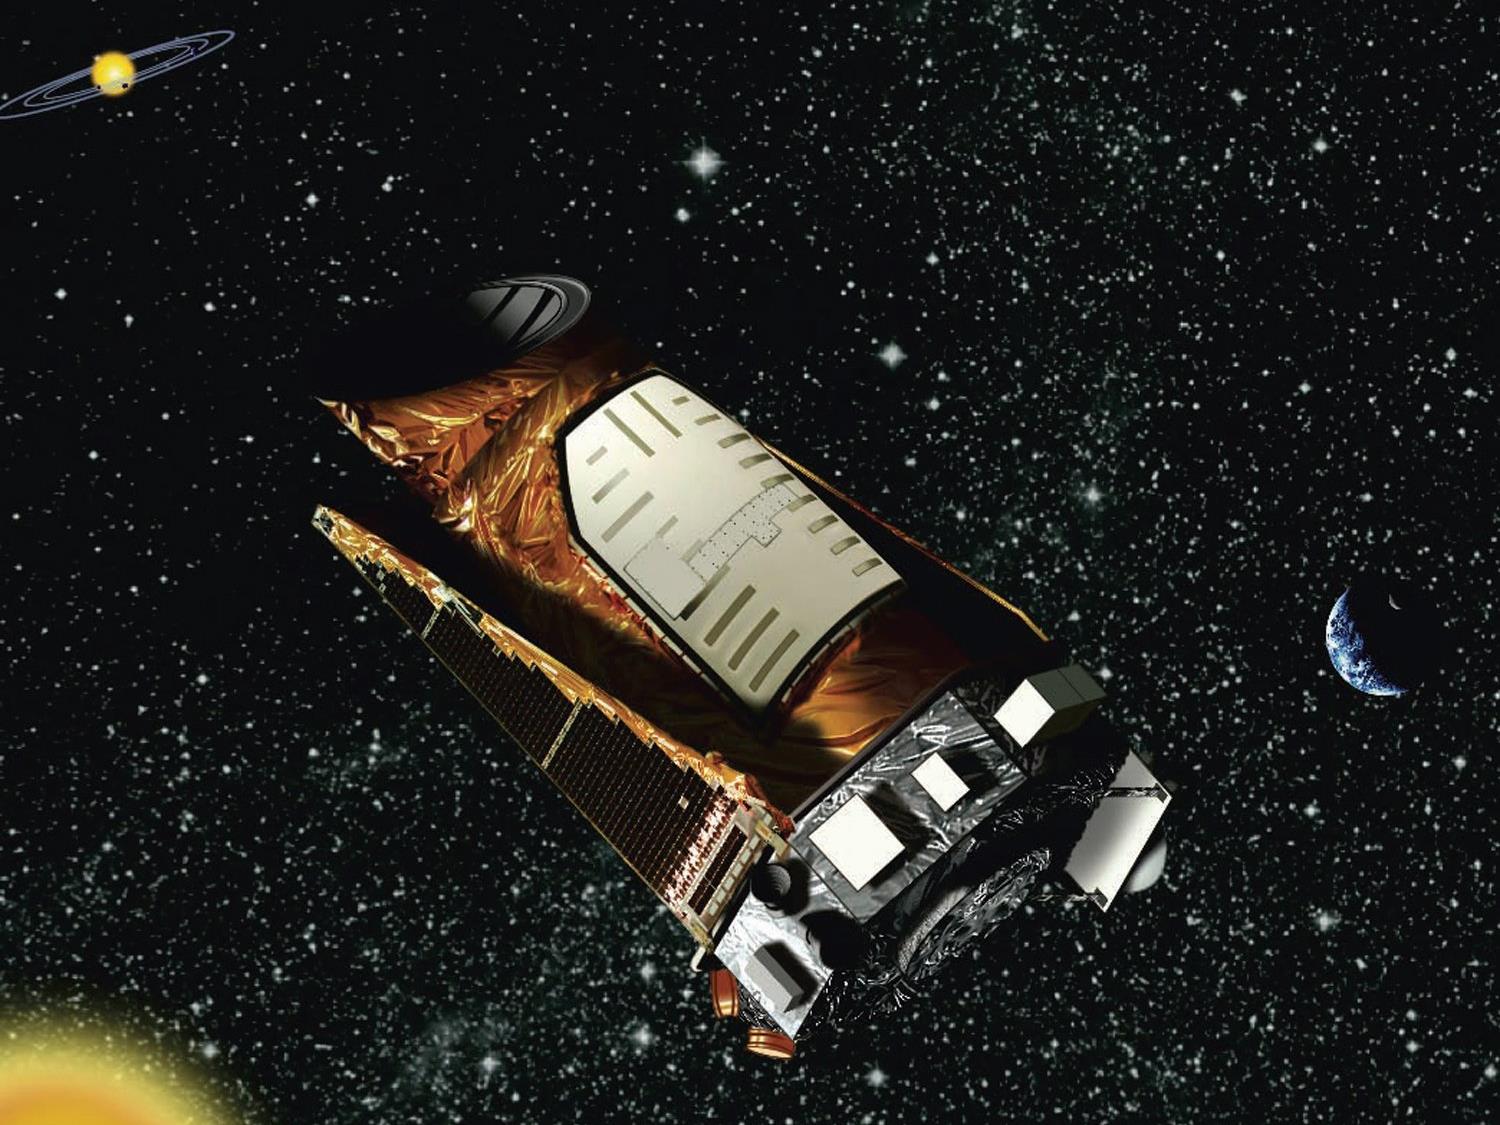 Die NASA bestätigt die Entdeckung von 1284 weiteren Planeten durch das Weltraumteleskop Kepler.